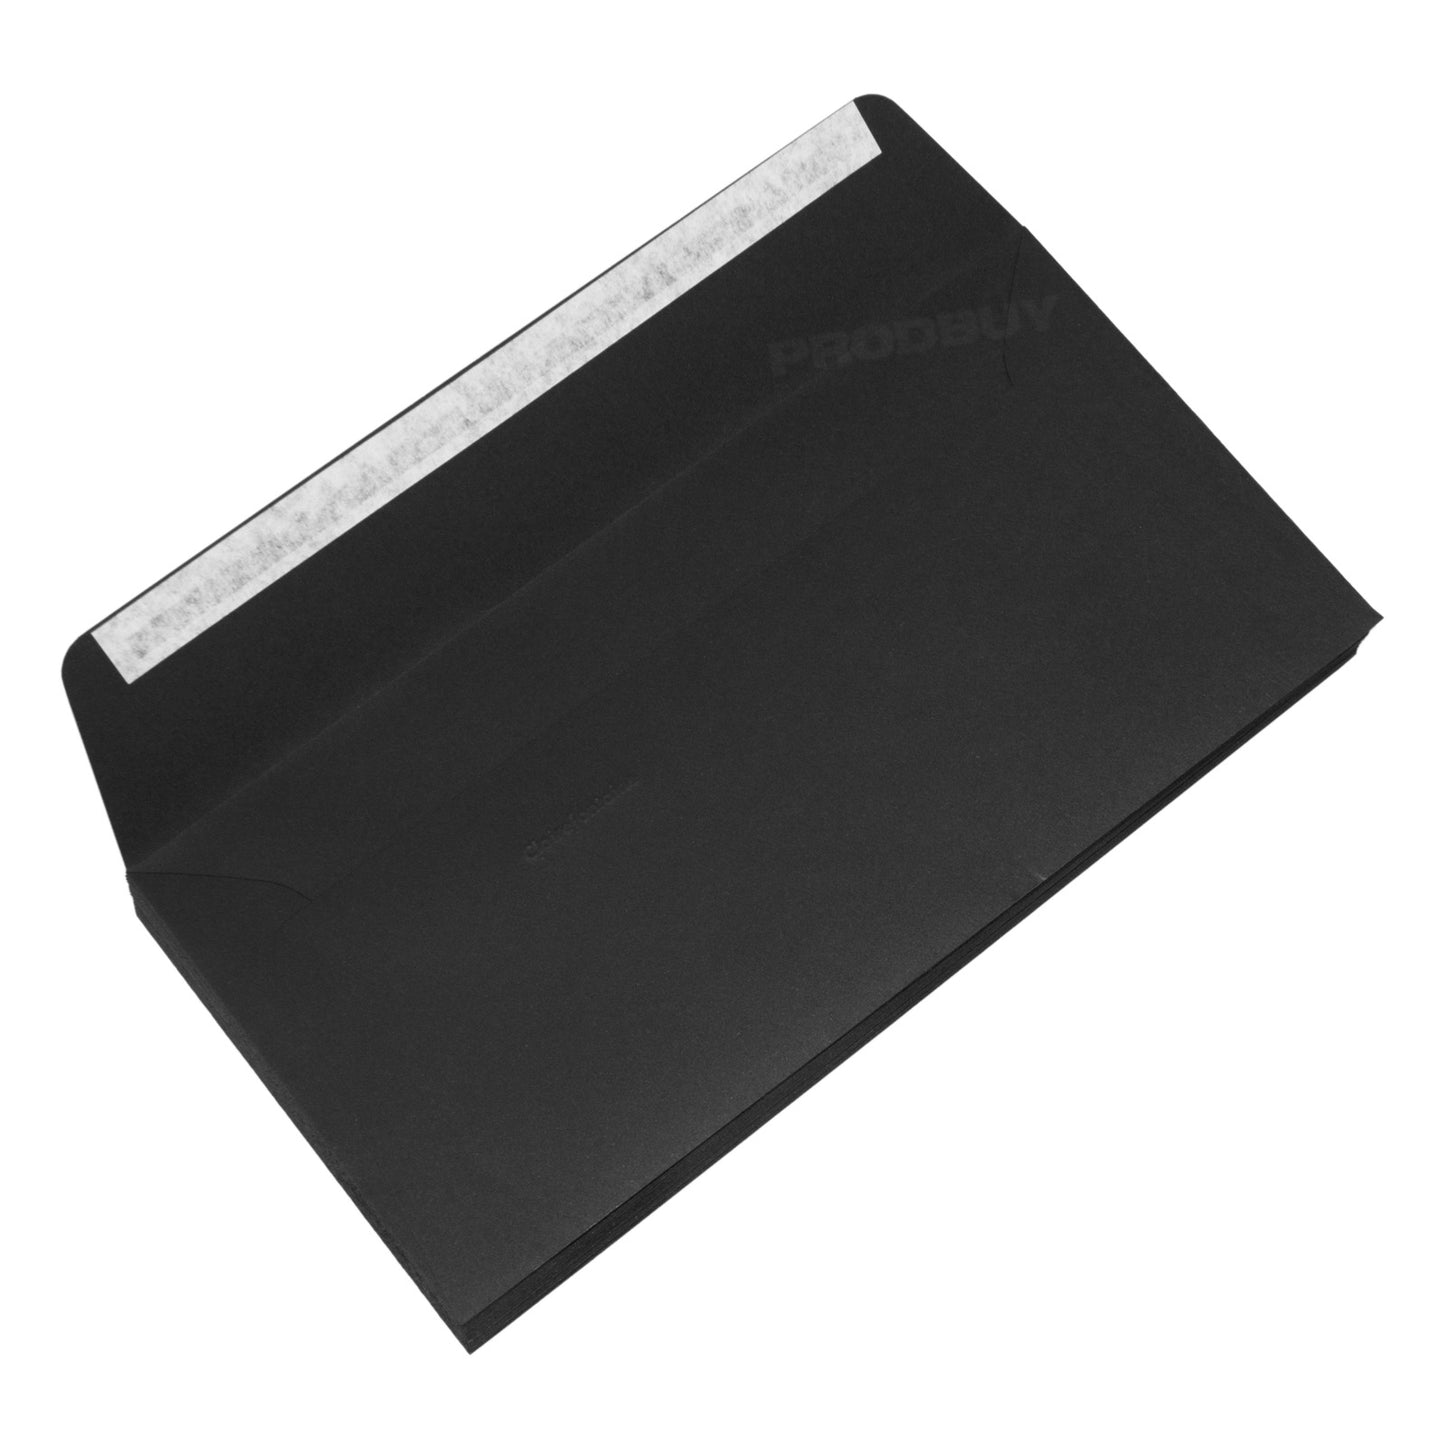 Set of 40 High Quality Plain DL Envelopes 120gsm with 'Noir' Black Colour